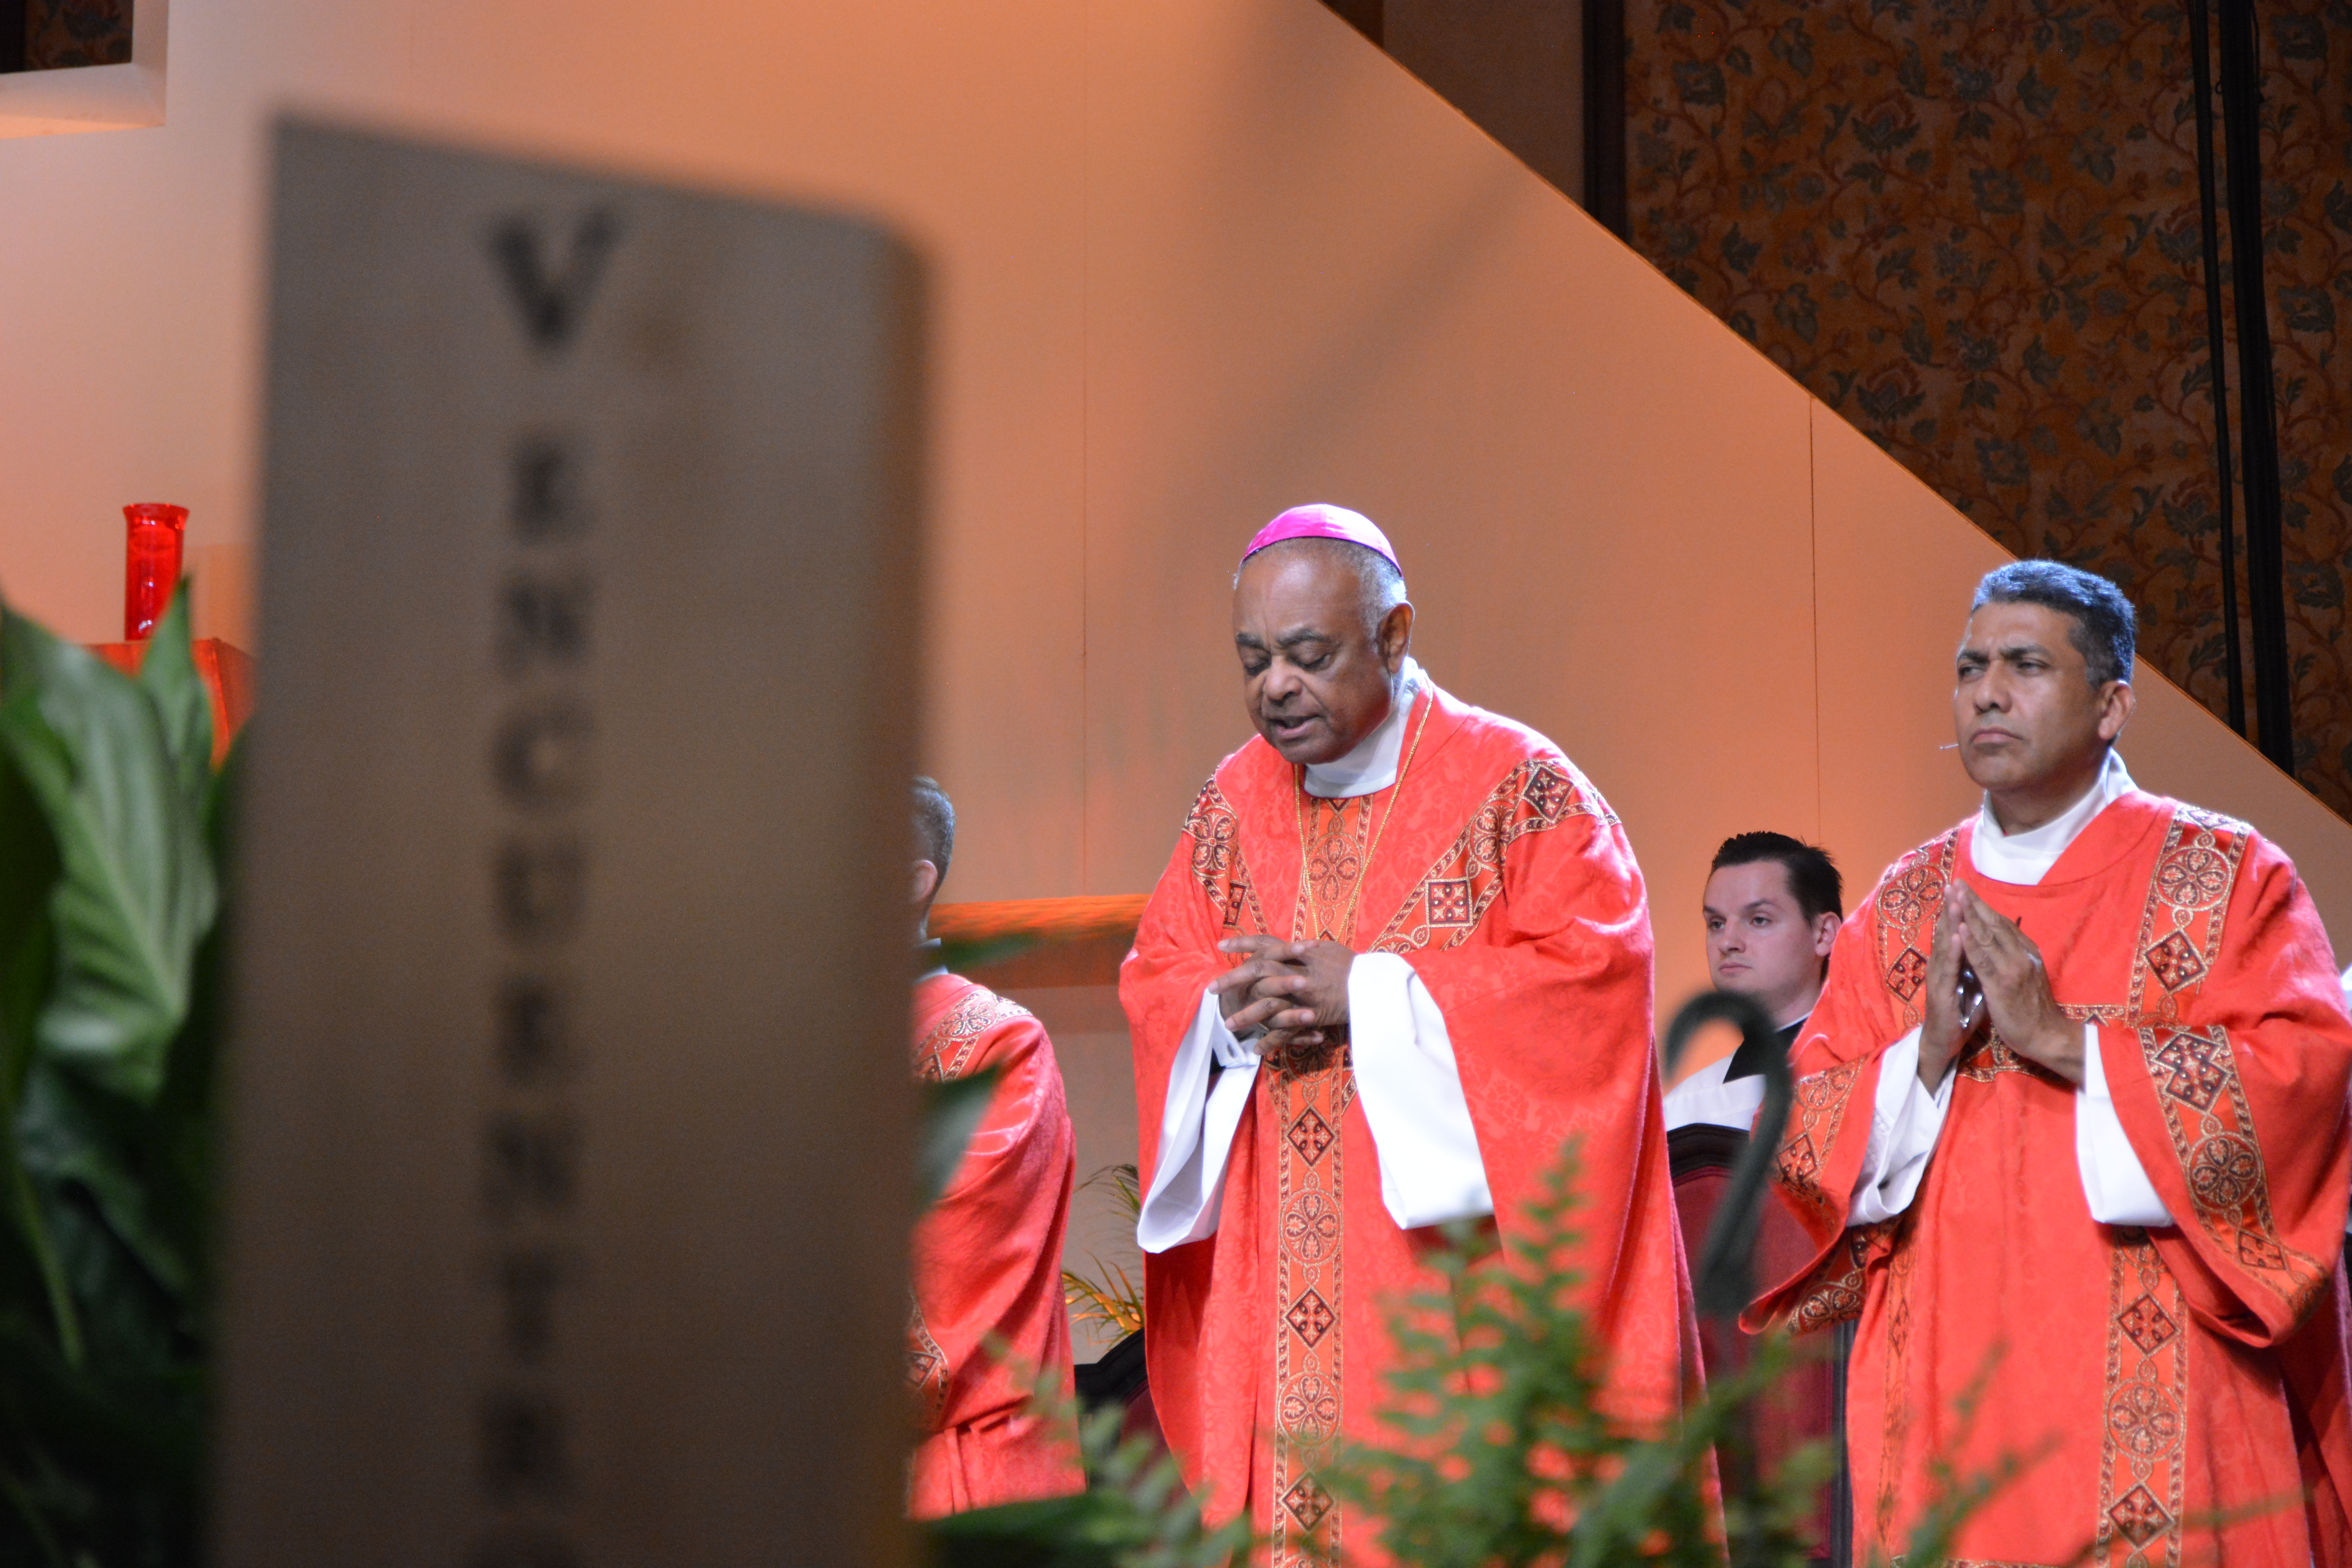 Monseñor Wilton Daniel Gregory, arzobispo de Atlanta, durante una Eucaristía durante el Encuentro